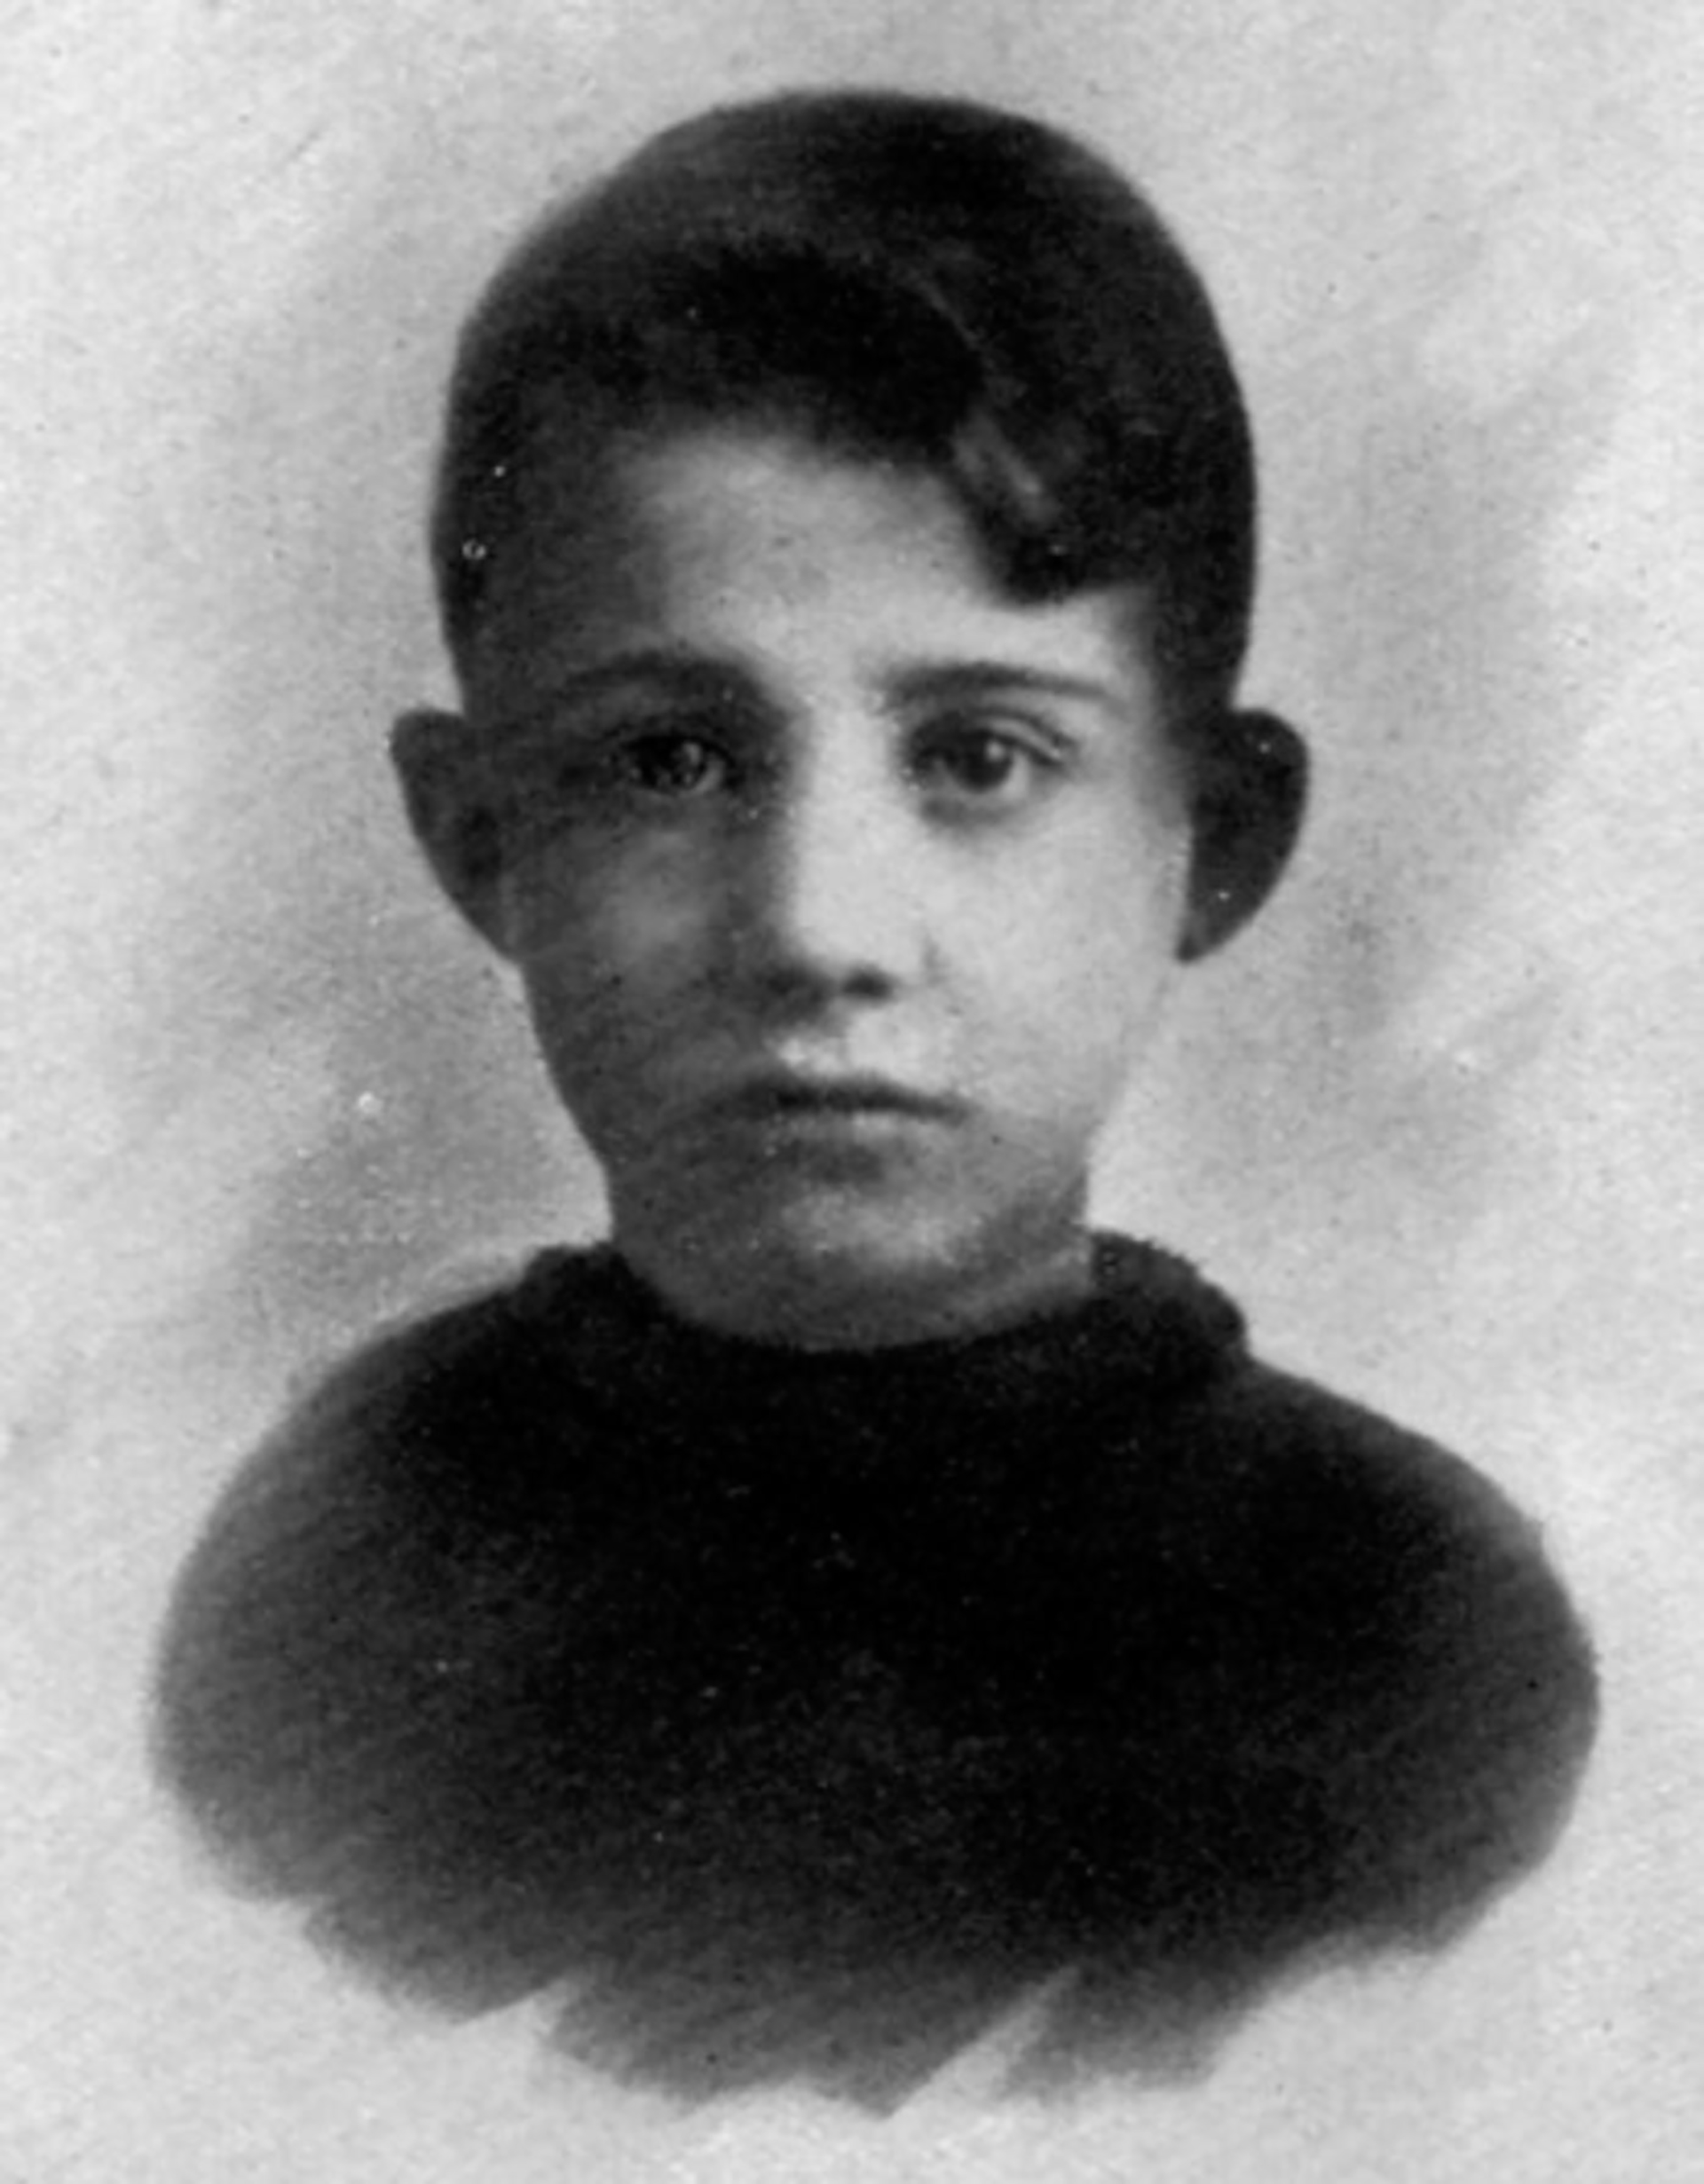 Anteo Zamboni cuando era un niño. Una de las pocas imágenes que se conservan de él con vida (The Grosby Group)